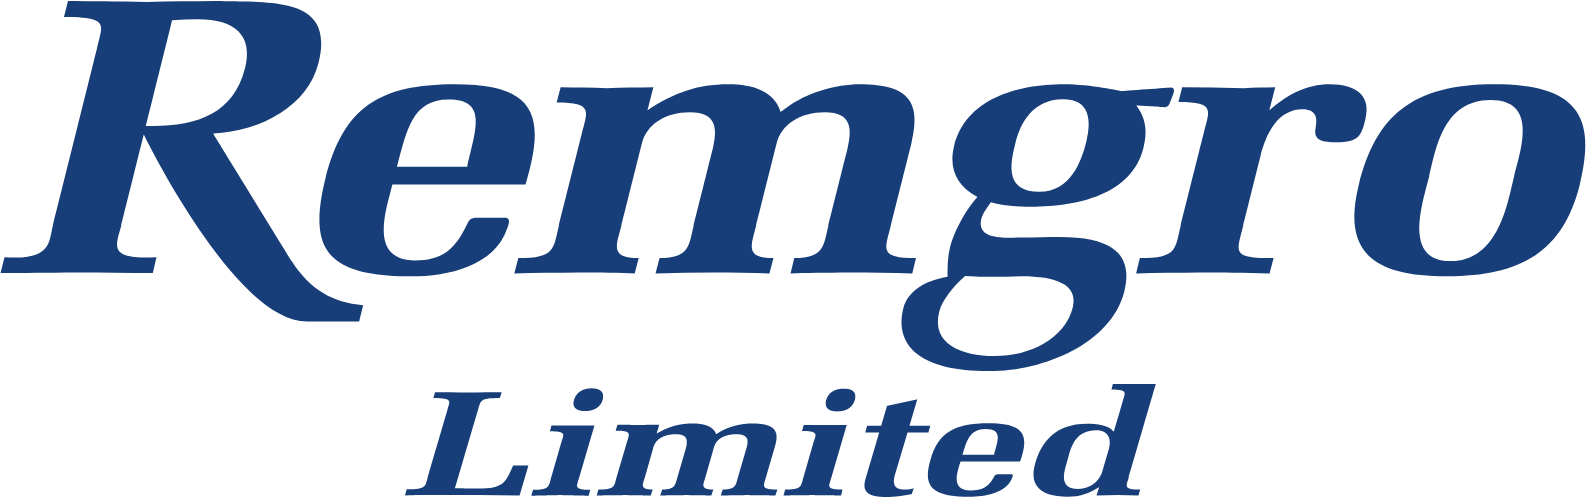 Remgro Limited logo large (transparent PNG)